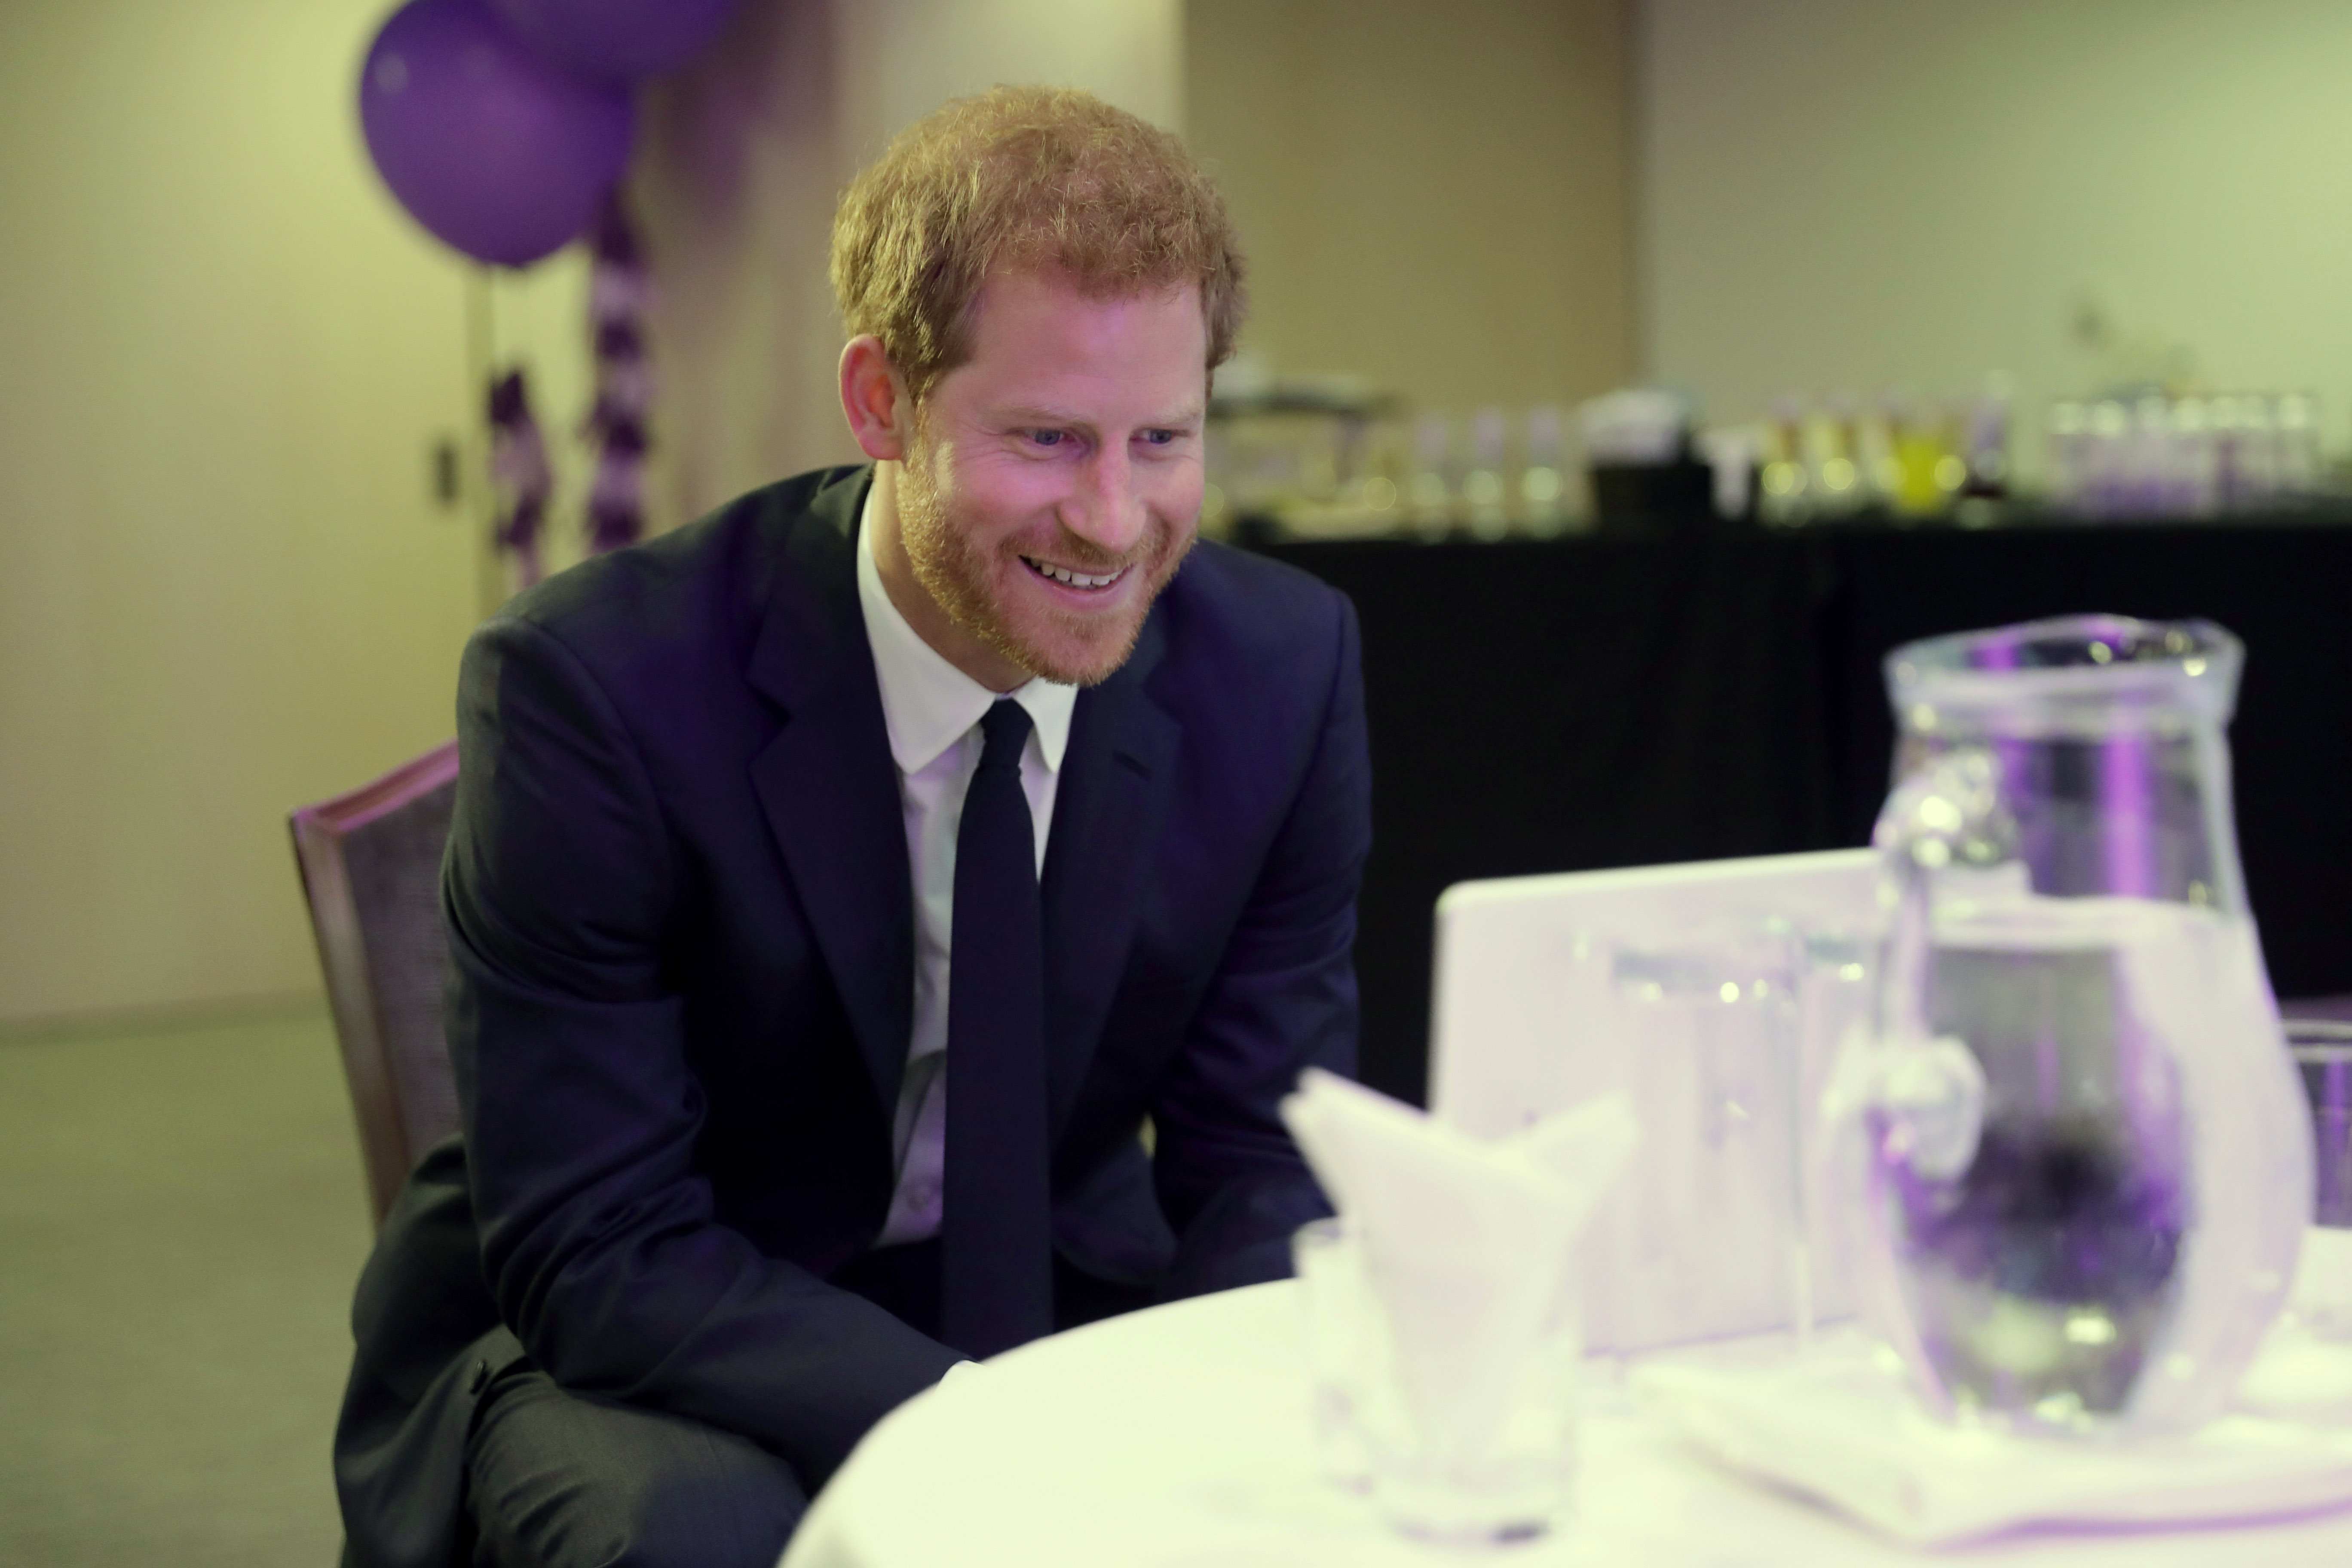 El príncipe Harry participa en una videollamada por Internet con los ganadores de Irlanda del Norte durante una recepción en el Royal Lancaster Hotel, el 16 de octubre de 2017 en Londres, Inglaterra. | Foto: Getty Images